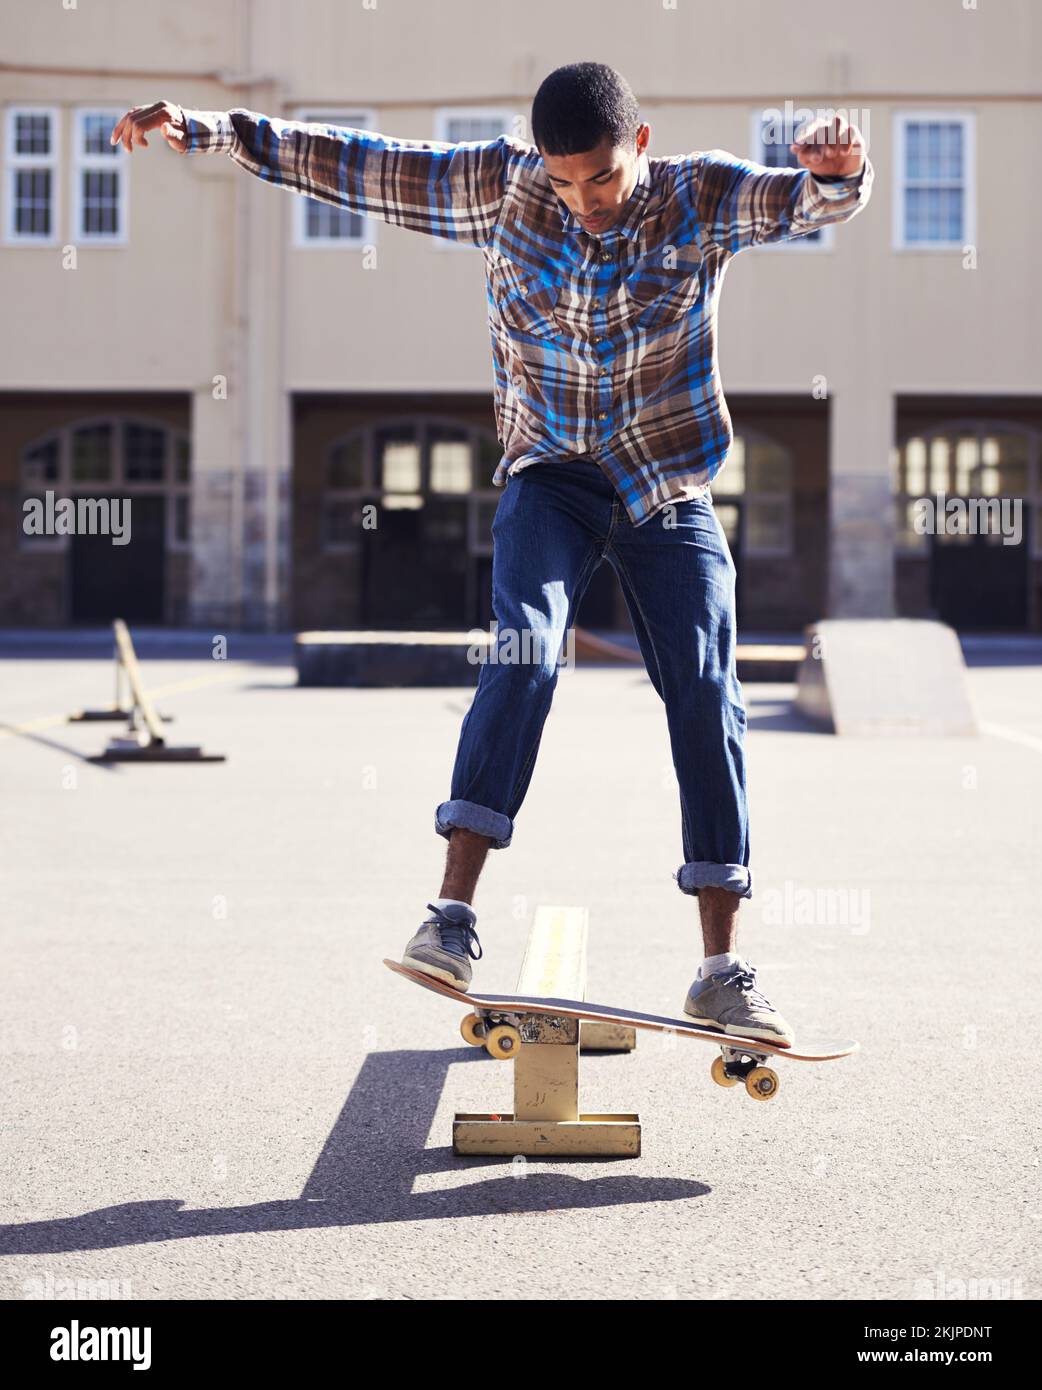 Le skateboard, ce n'est pas seulement un sport, c'est un style de vie. un jeune homme qui fait du skateboard dans un parc de skate. Banque D'Images